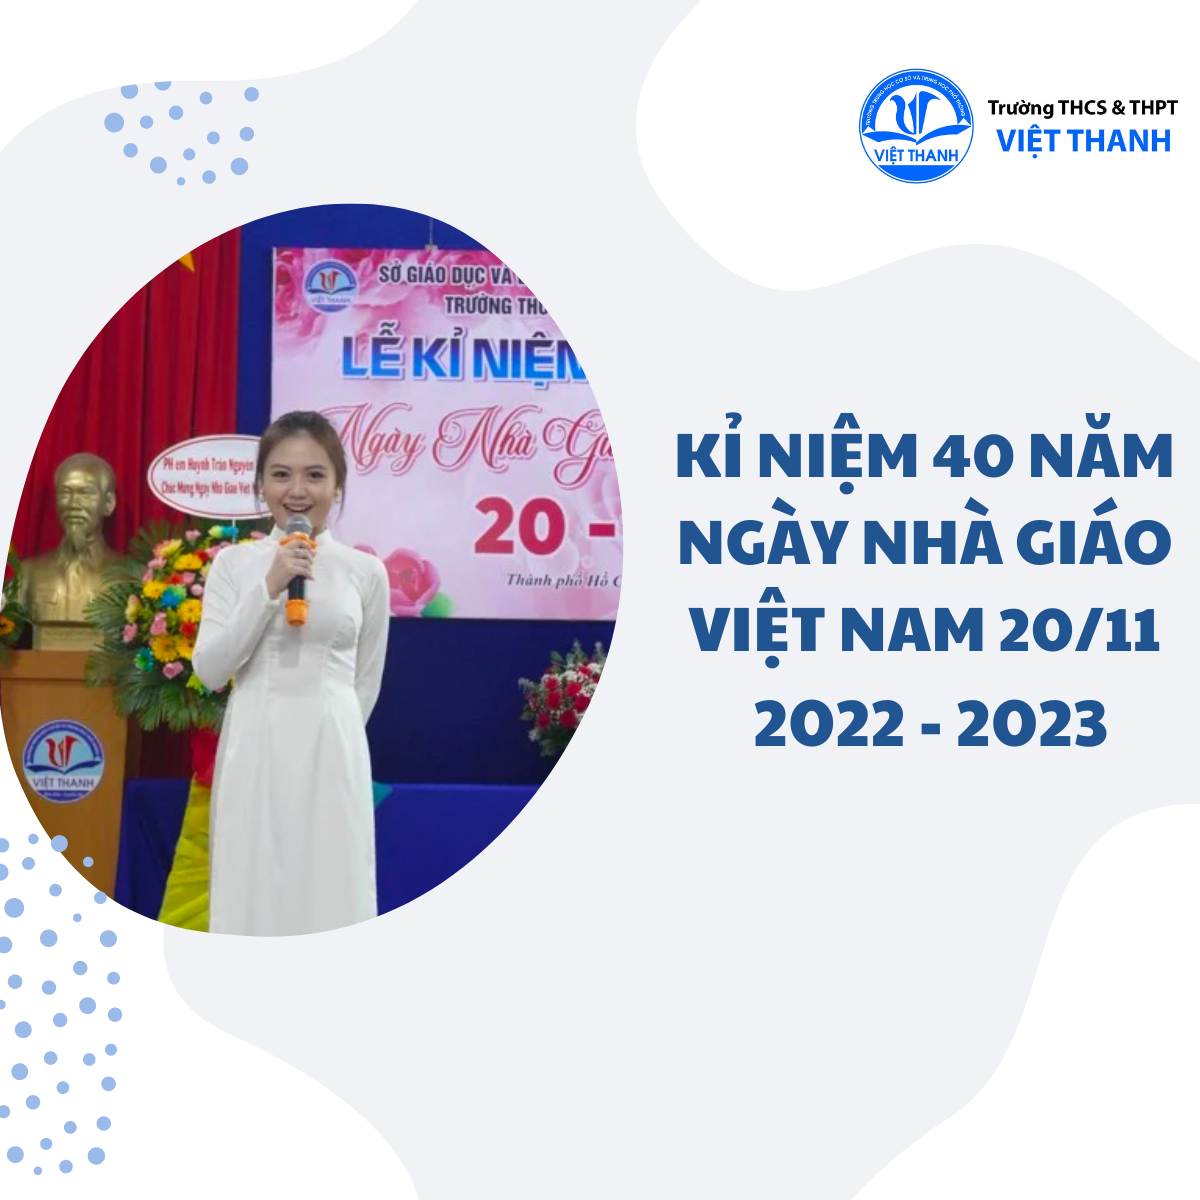 Kỉ niệm 40 năm ngày Nhà Giáo Việt Nam 20/11 2022 - 2023